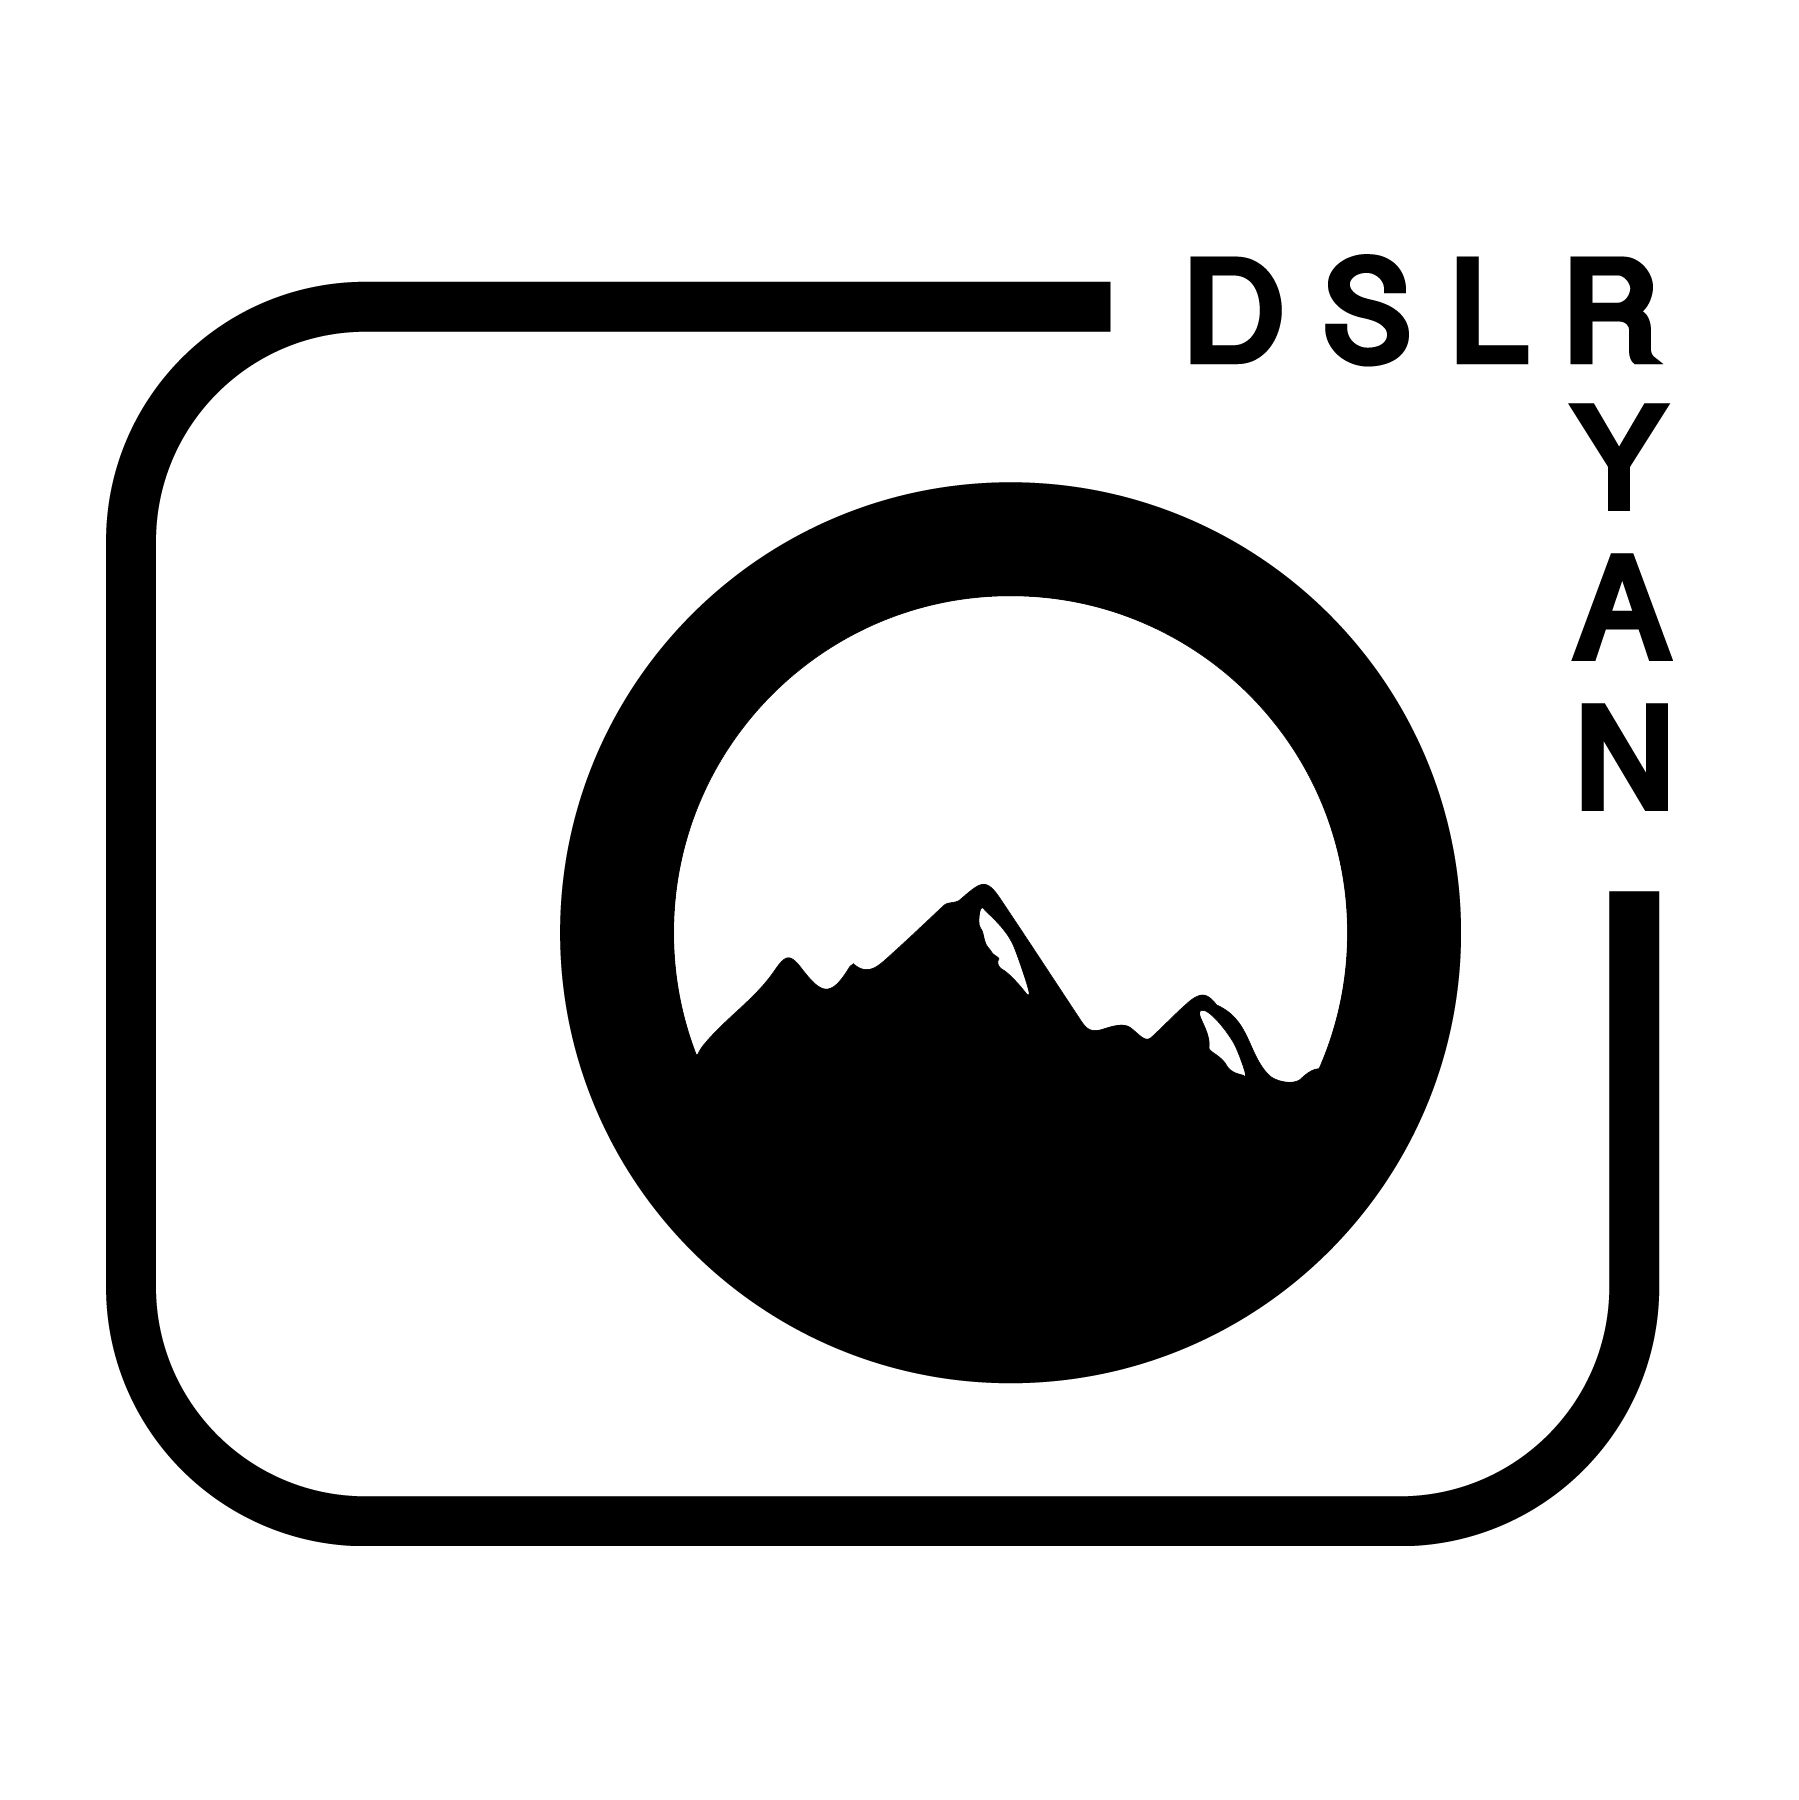 DSLRyan